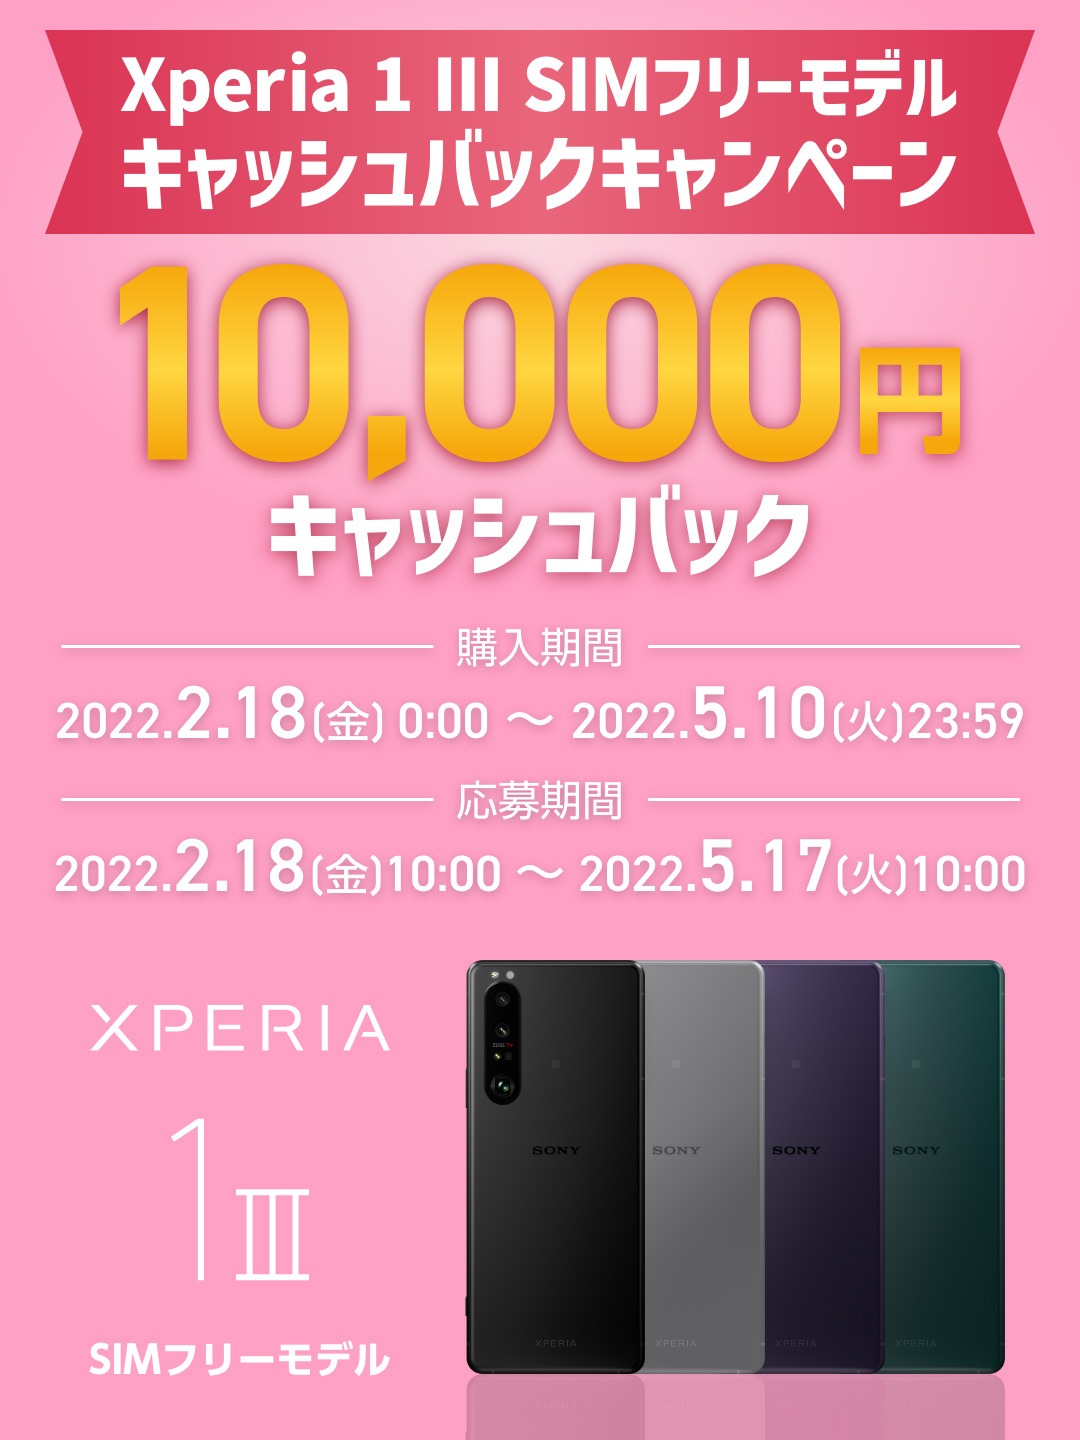 Xperia 1 III SIMフリーモデルキャッシュバックキャンペーン 10,000円キャッシュバック 購入期間：2022.2.18(金)0:00 ～ 2022.5.10(火)23:59 応募期間：2022.2.18(金)10:00 ～ 2022.5.17(火)10:00